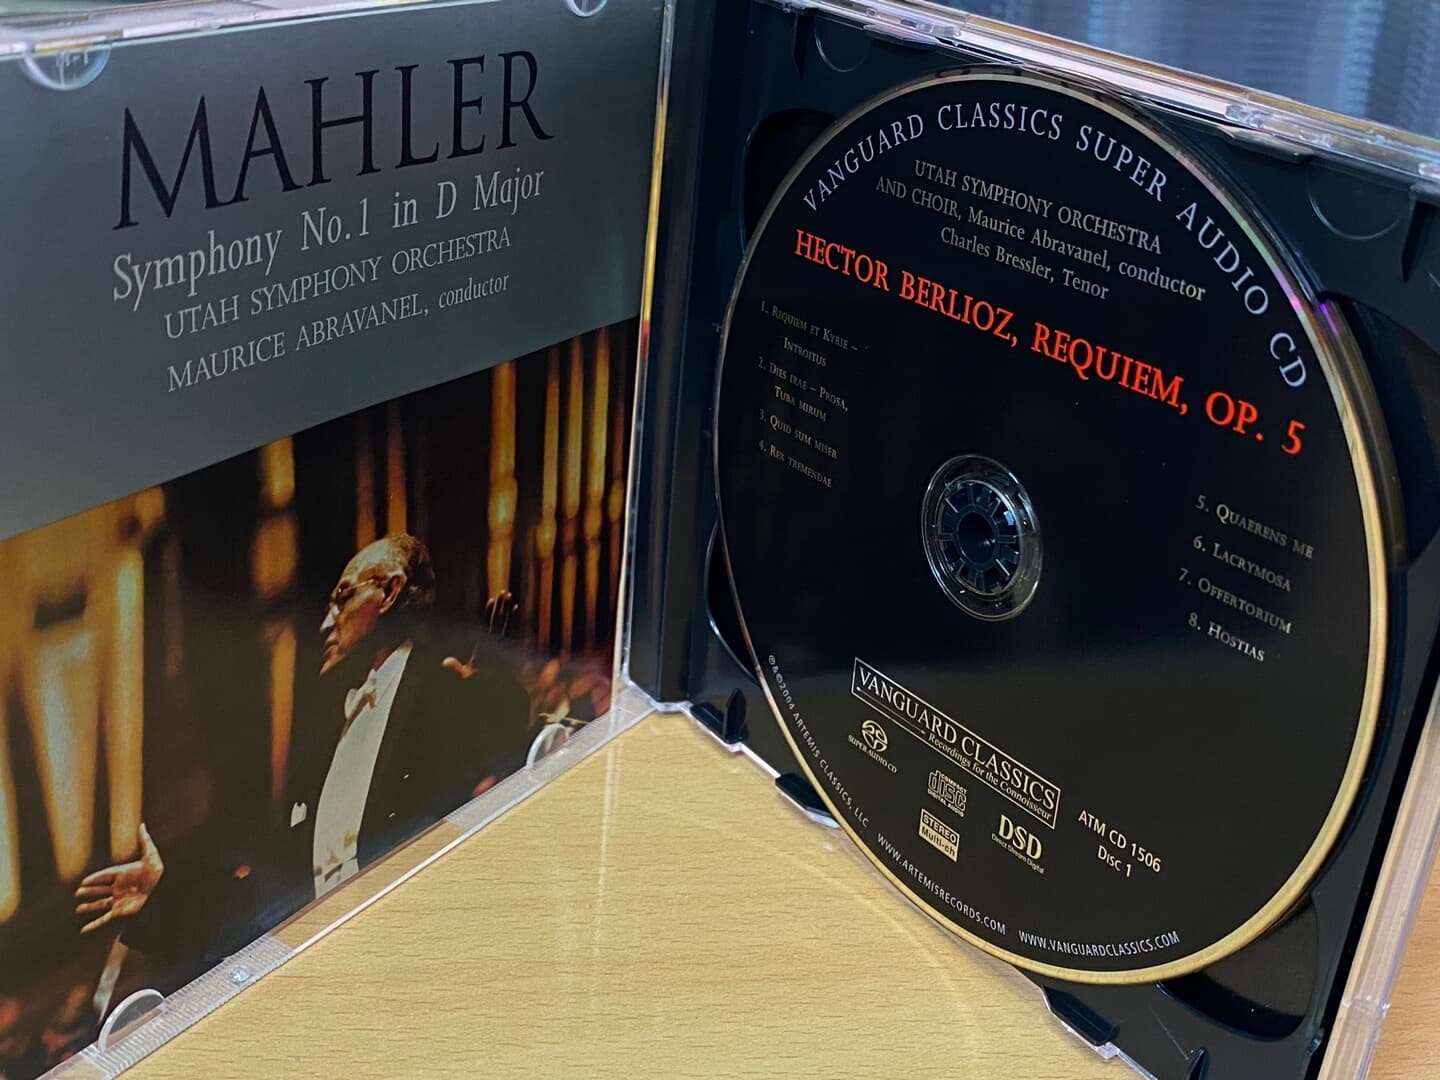 모리스 아브라바넬 - Maurice De Abravanel - Berlioz,Mahler Requiem Op. 5,Sym No.1 Titan 2Cds [SACD] [U.S발매]